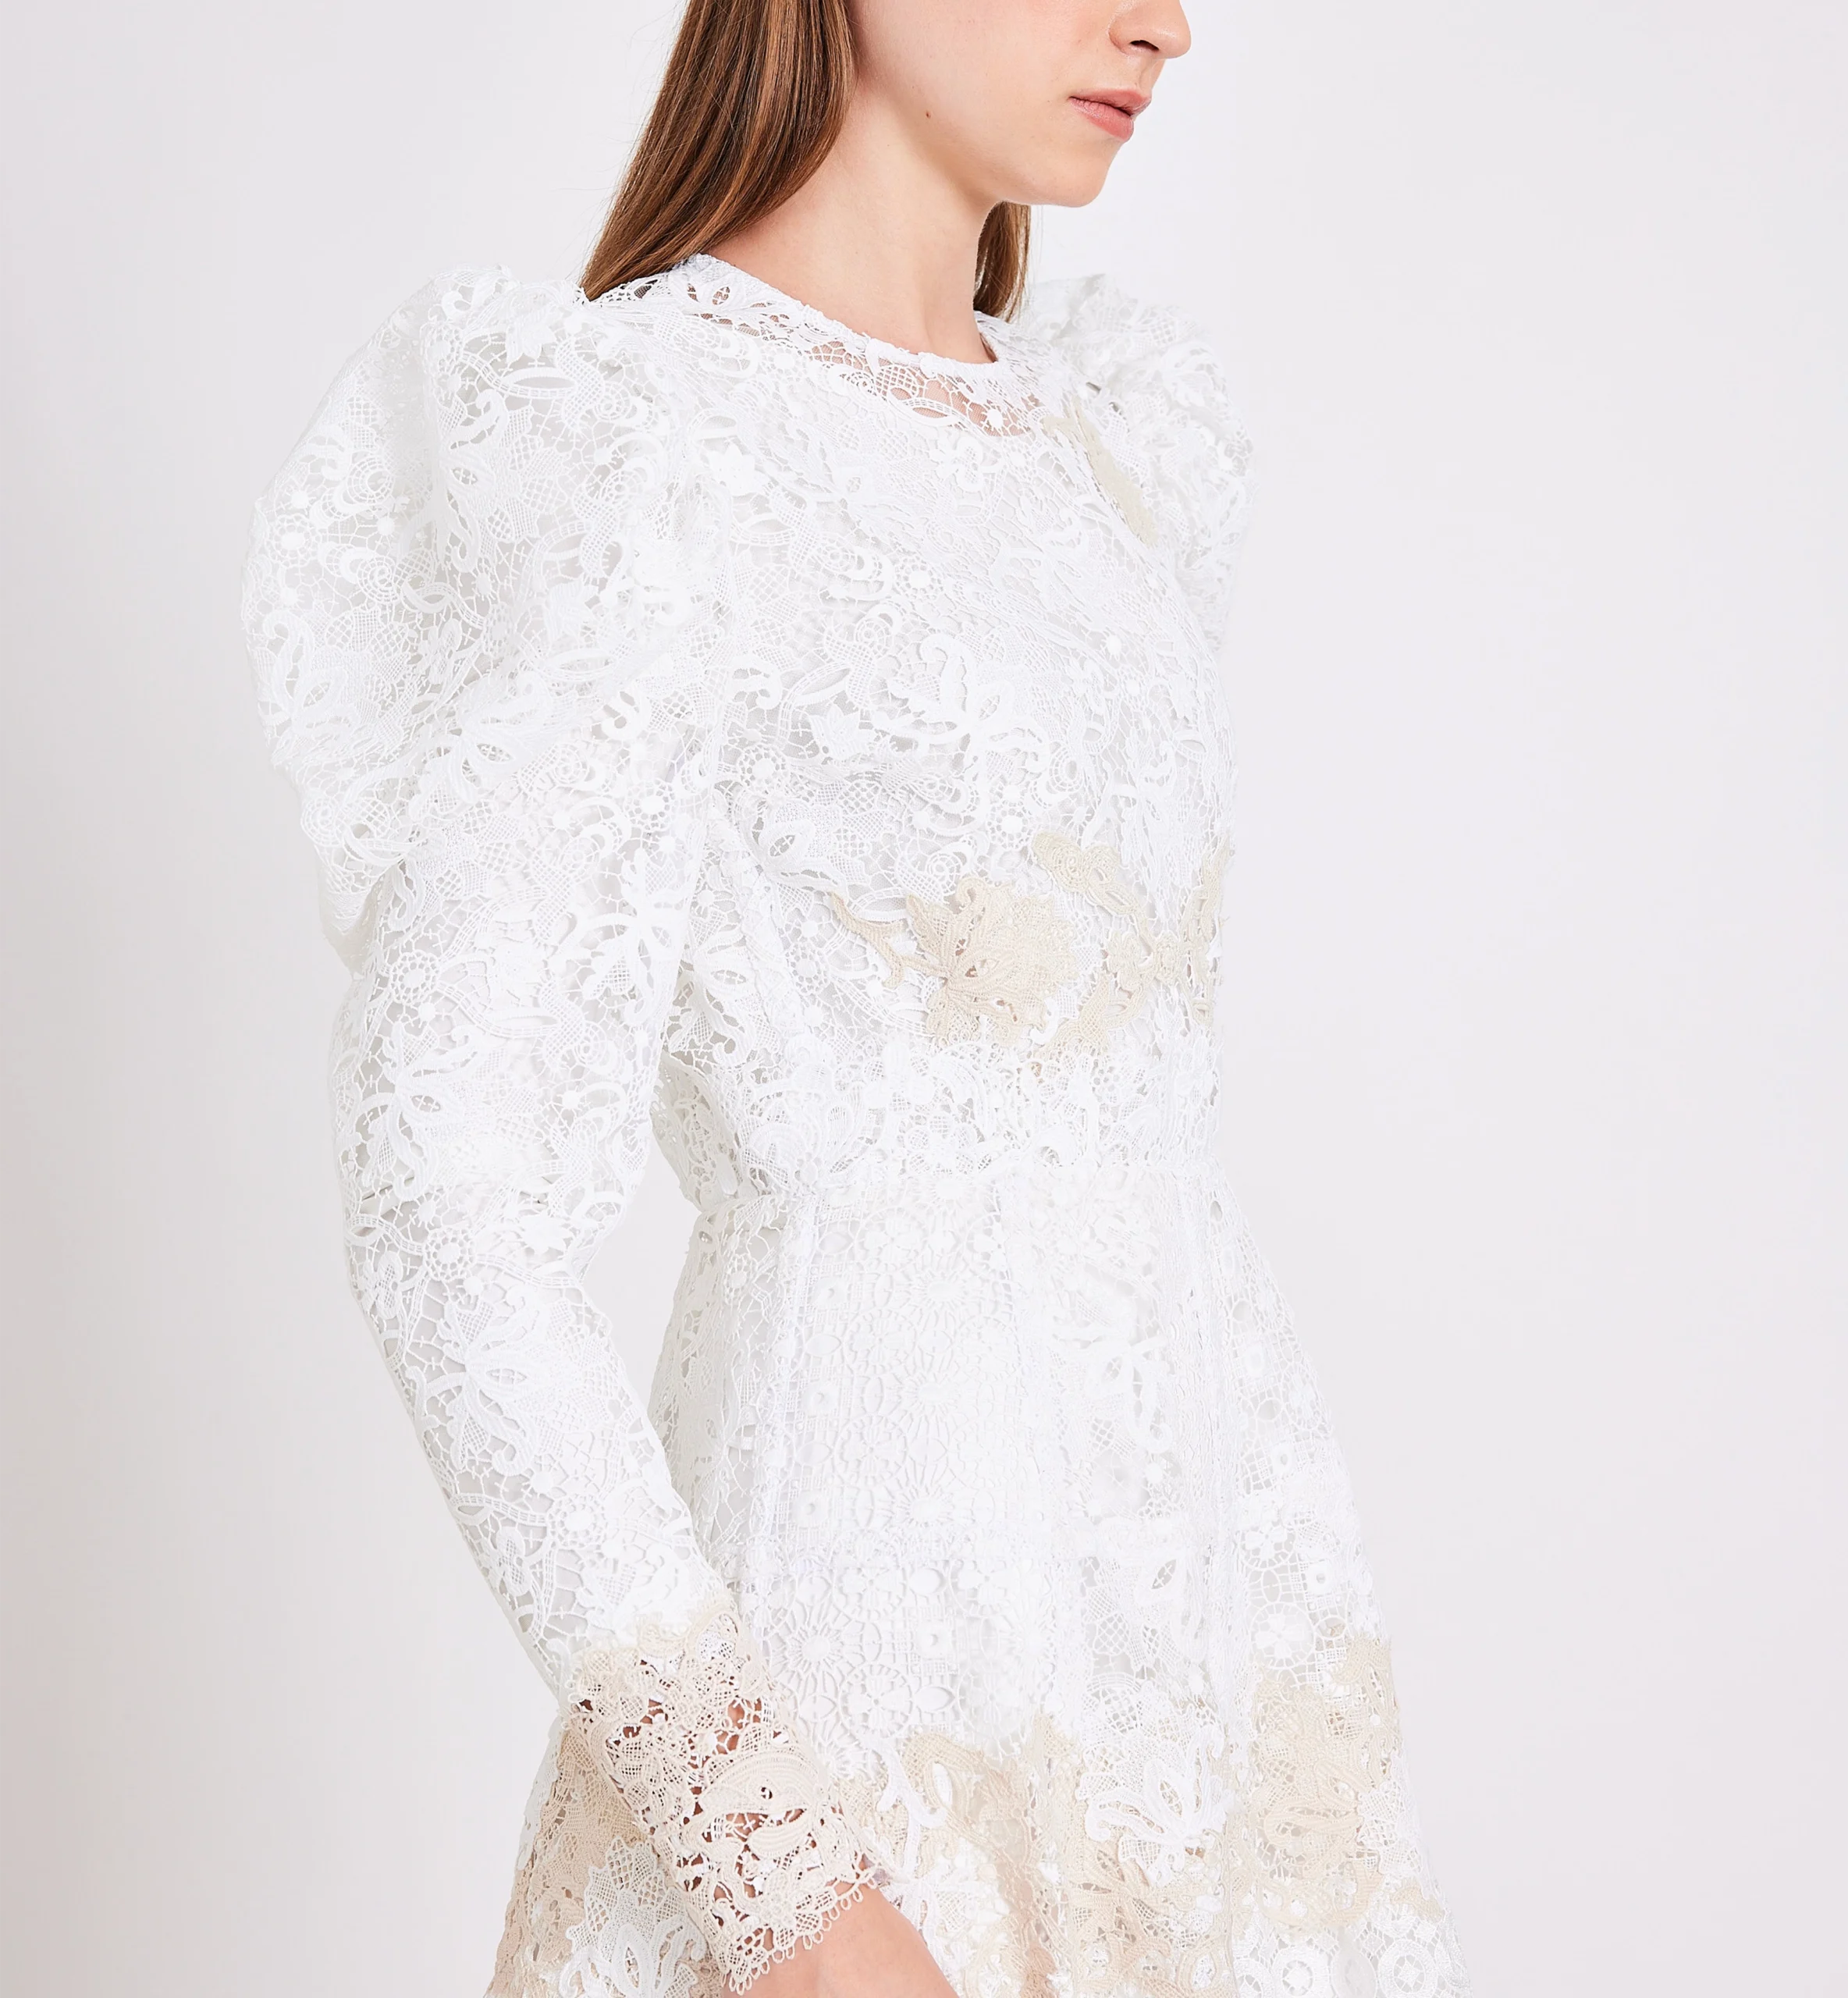 Lace combination midi dress, biege & white